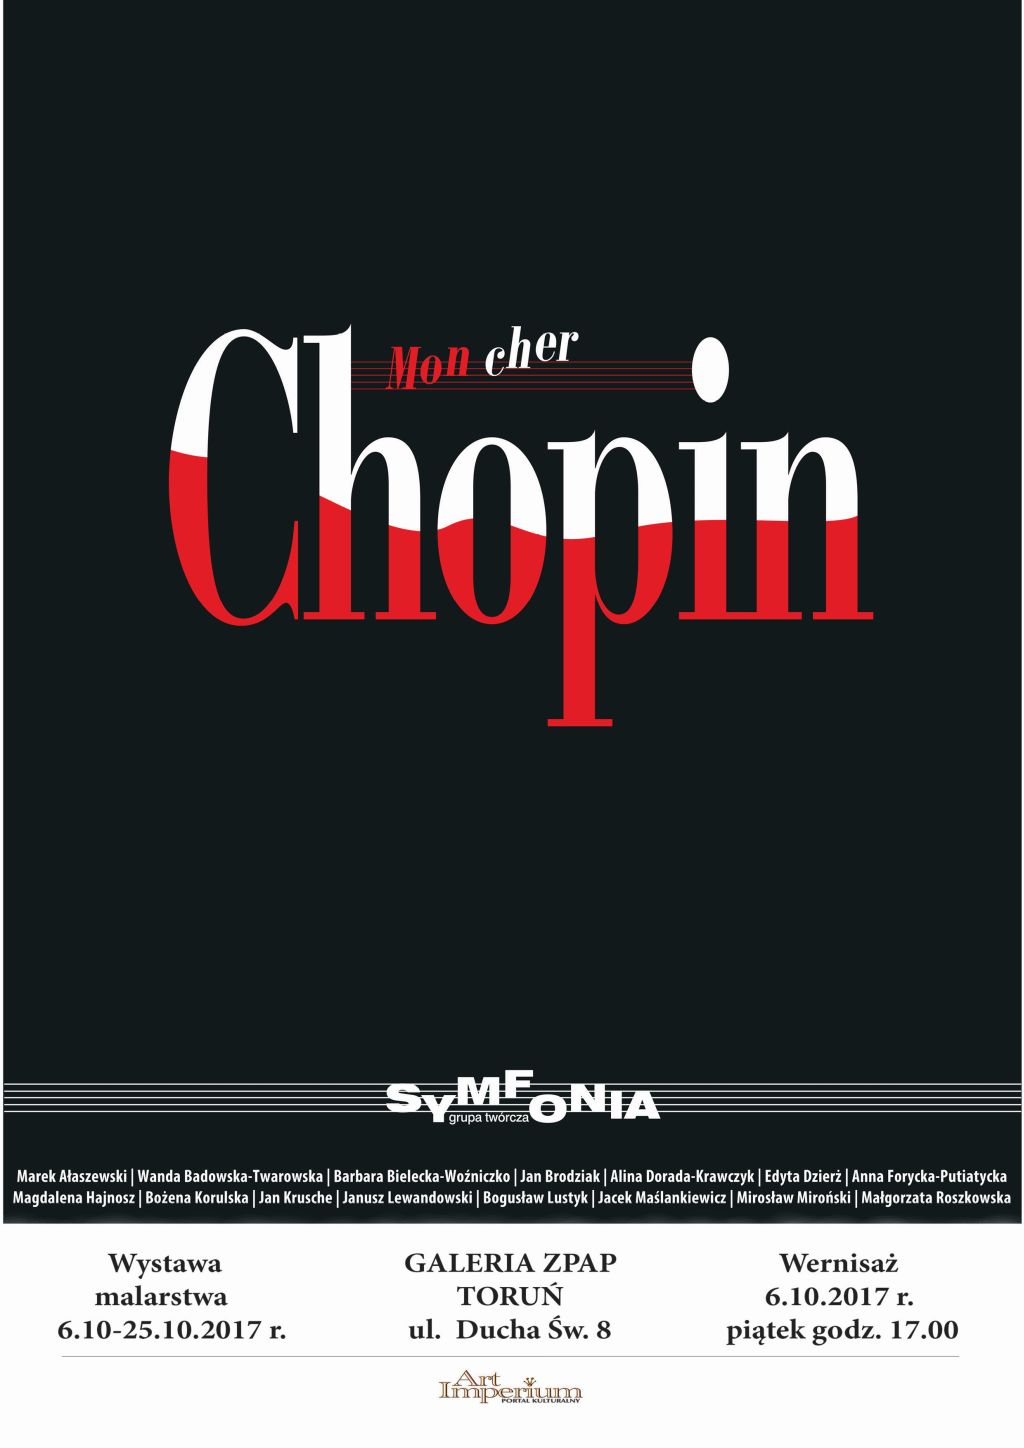 Zapraszamy na wystawę “Mon Cher Chopin” – grupa twórcza SYMFONIA